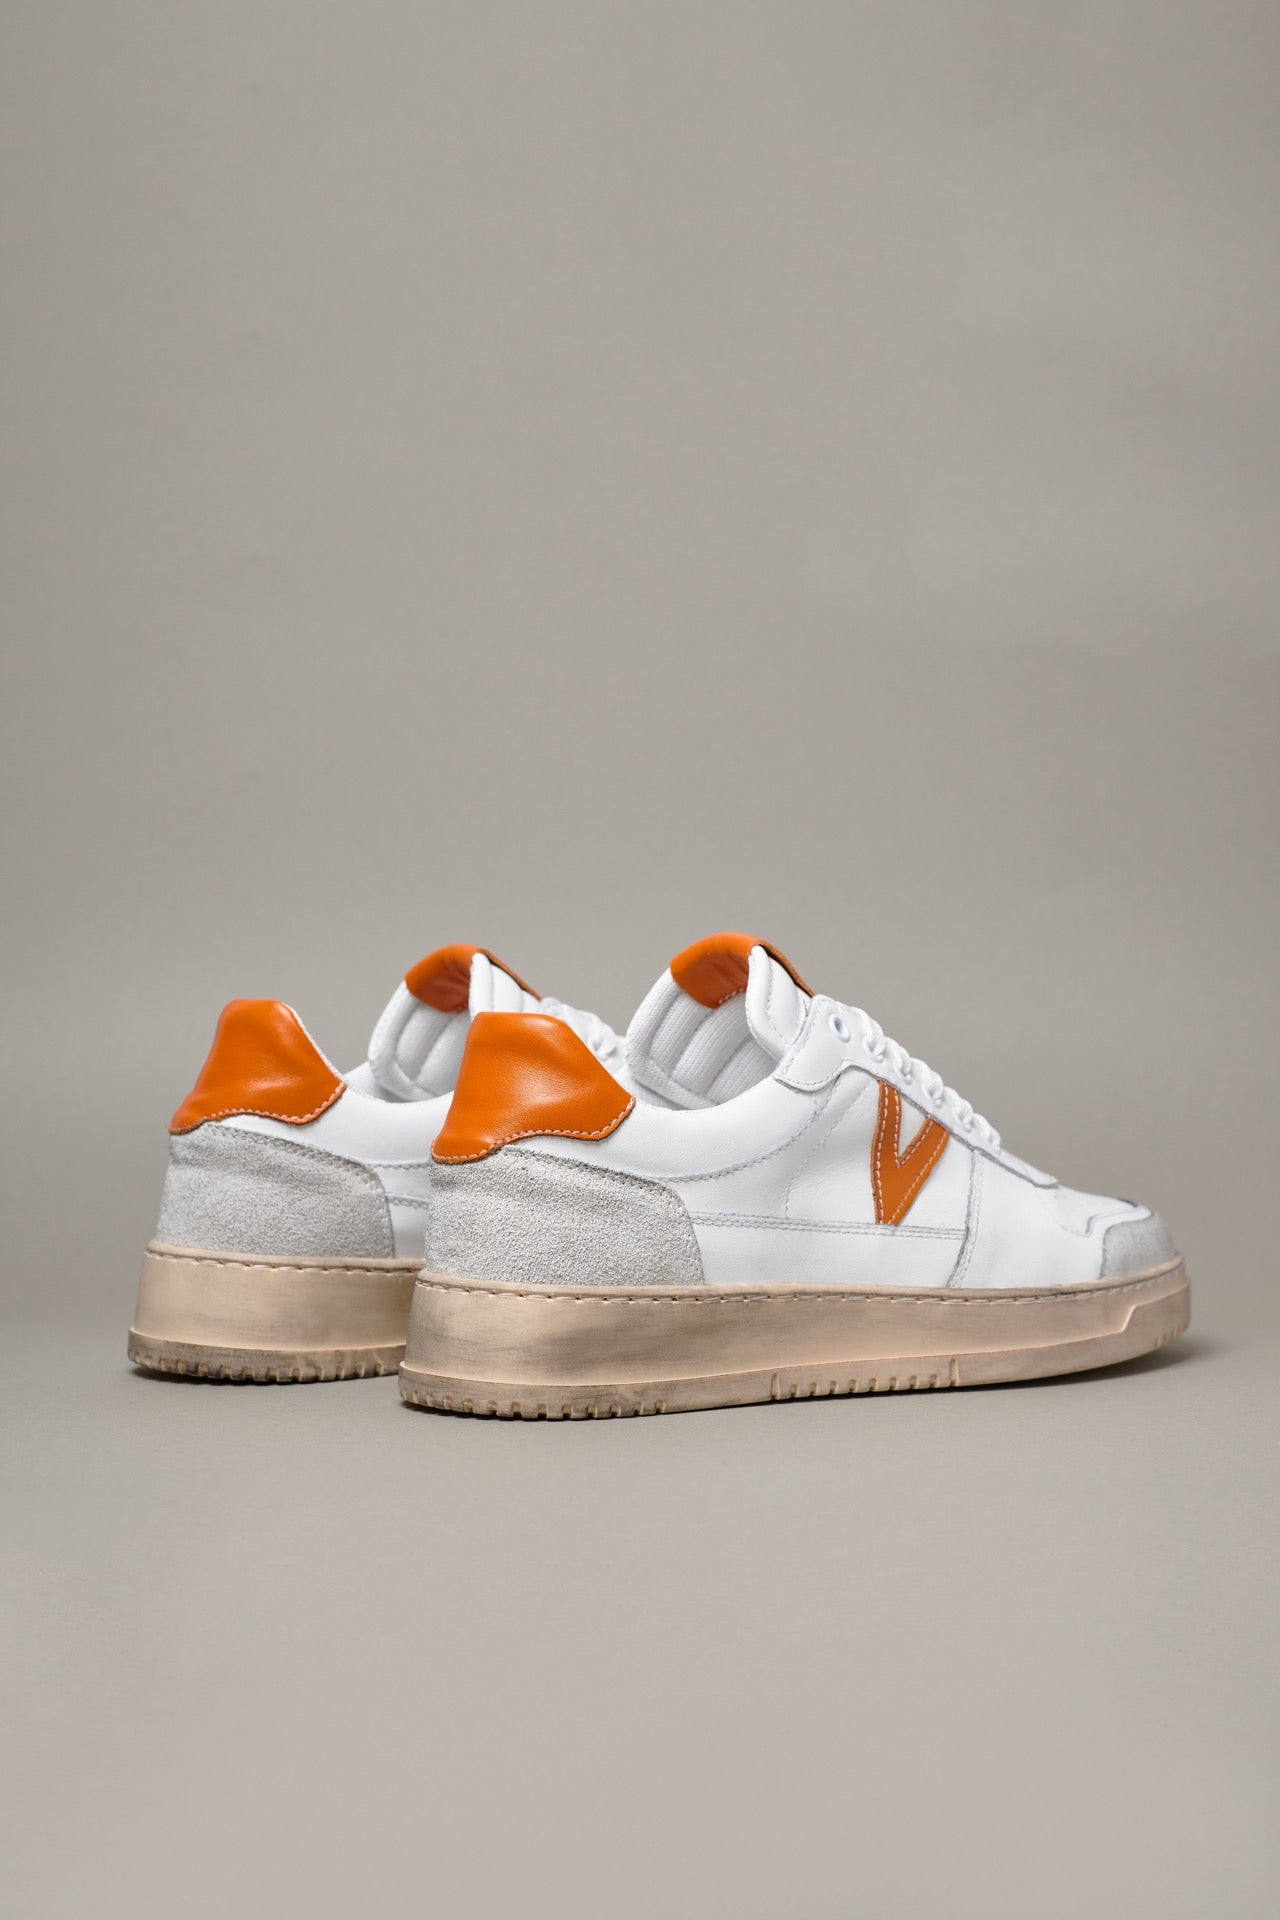 COLLEGE - Sneakers Bianca con retro e inserto Arancione